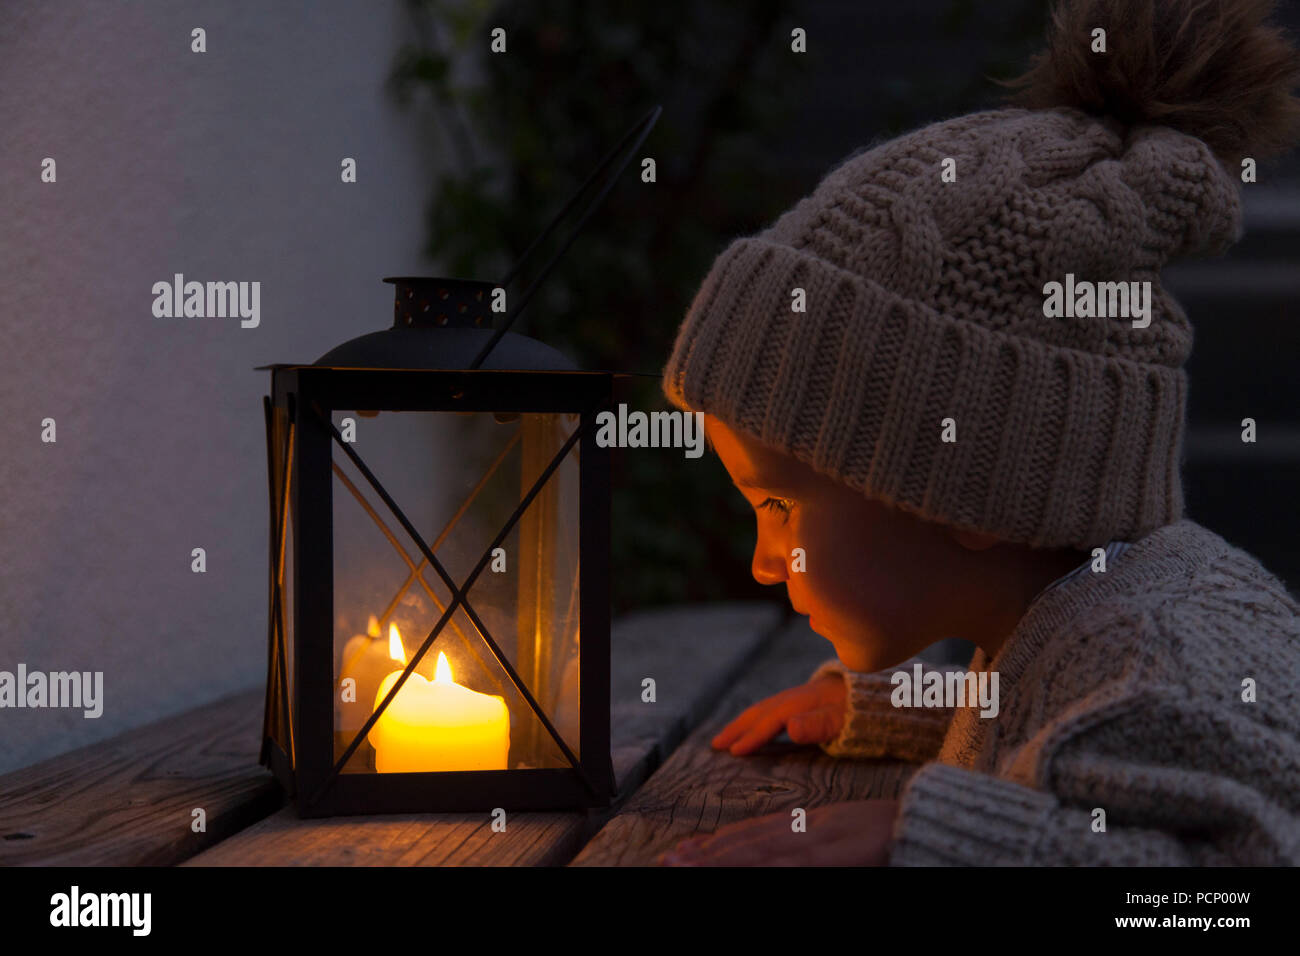 Petit garçon face à des bougies d'une lanterne Banque D'Images